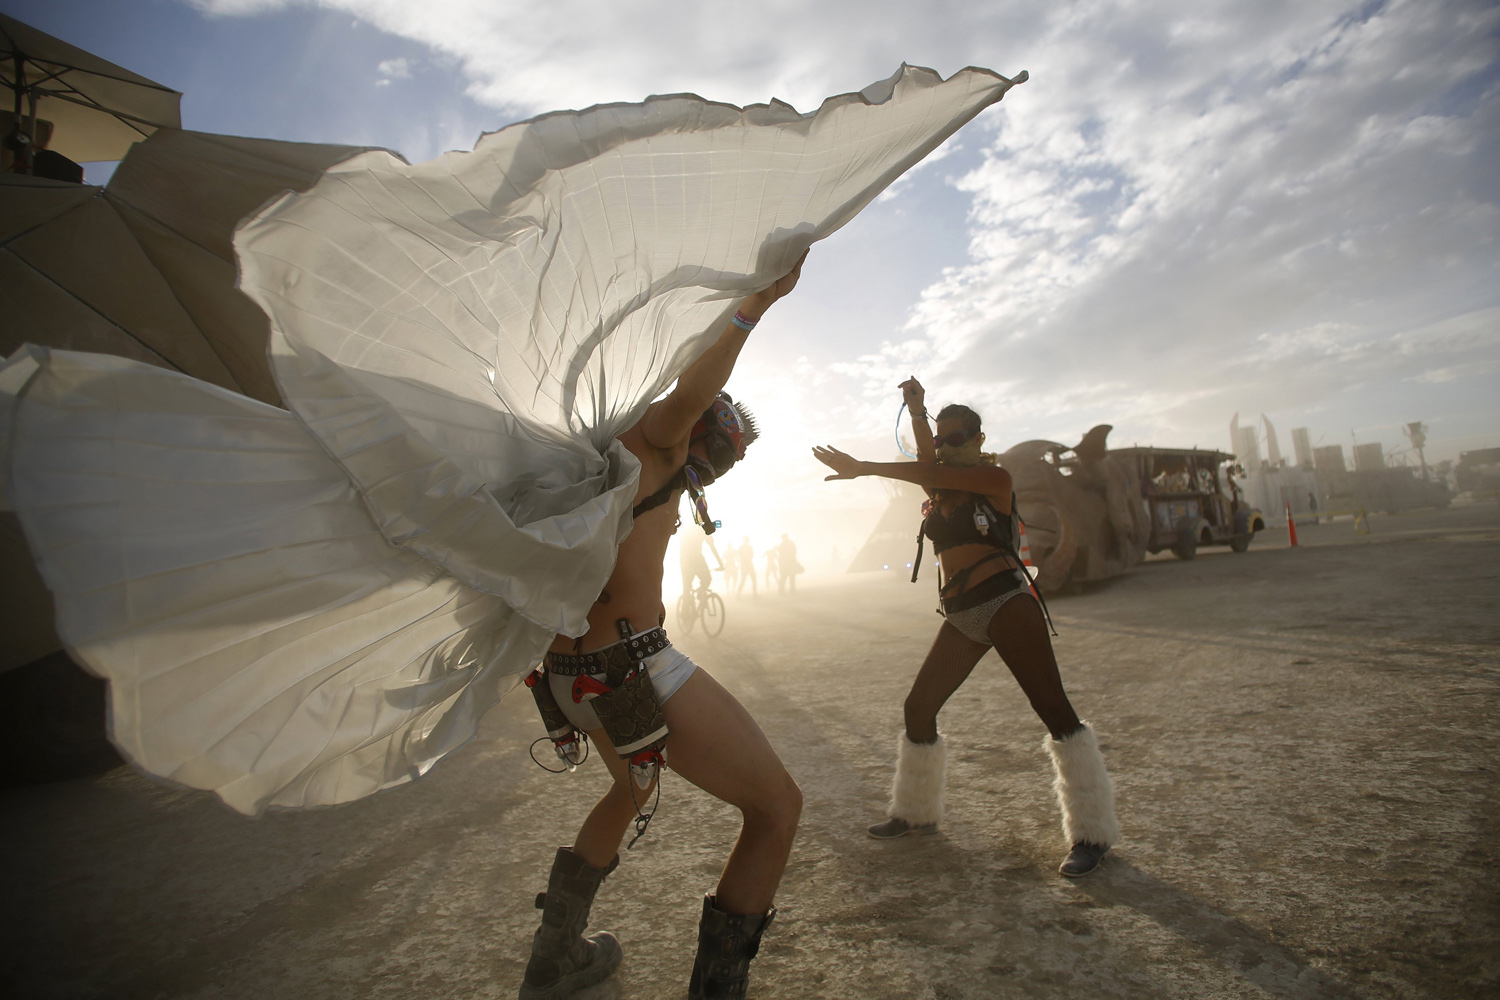 Dillon Bracken and Atalya Stachel dance during the Burning Man 2014 "Caravansary" arts and music festival in the Black Rock Desert of Nevada